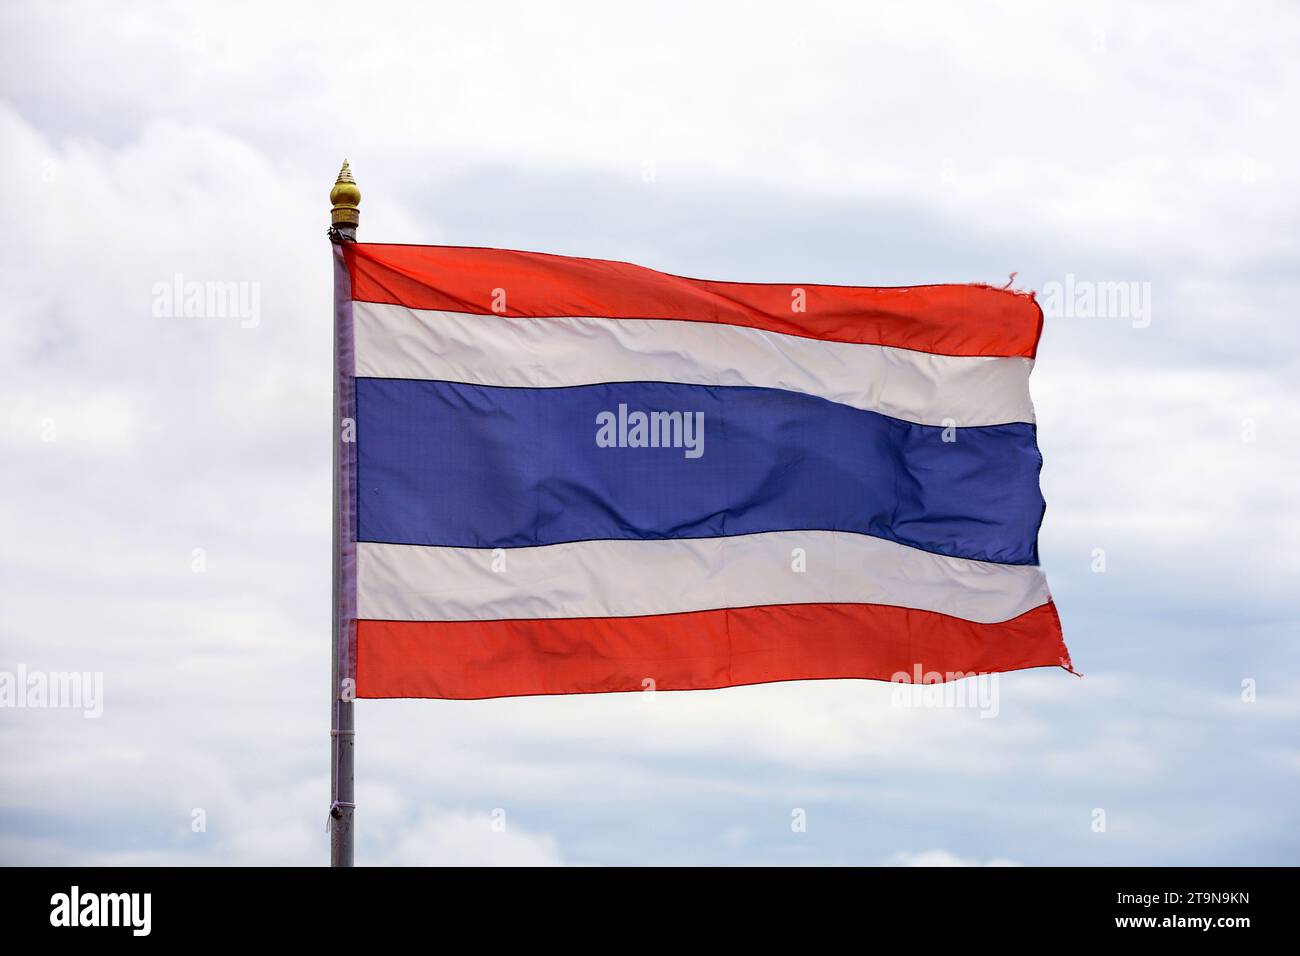 La bandiera nazionale del Regno di Thailandia sventola contro il cielo con le nuvole Foto Stock